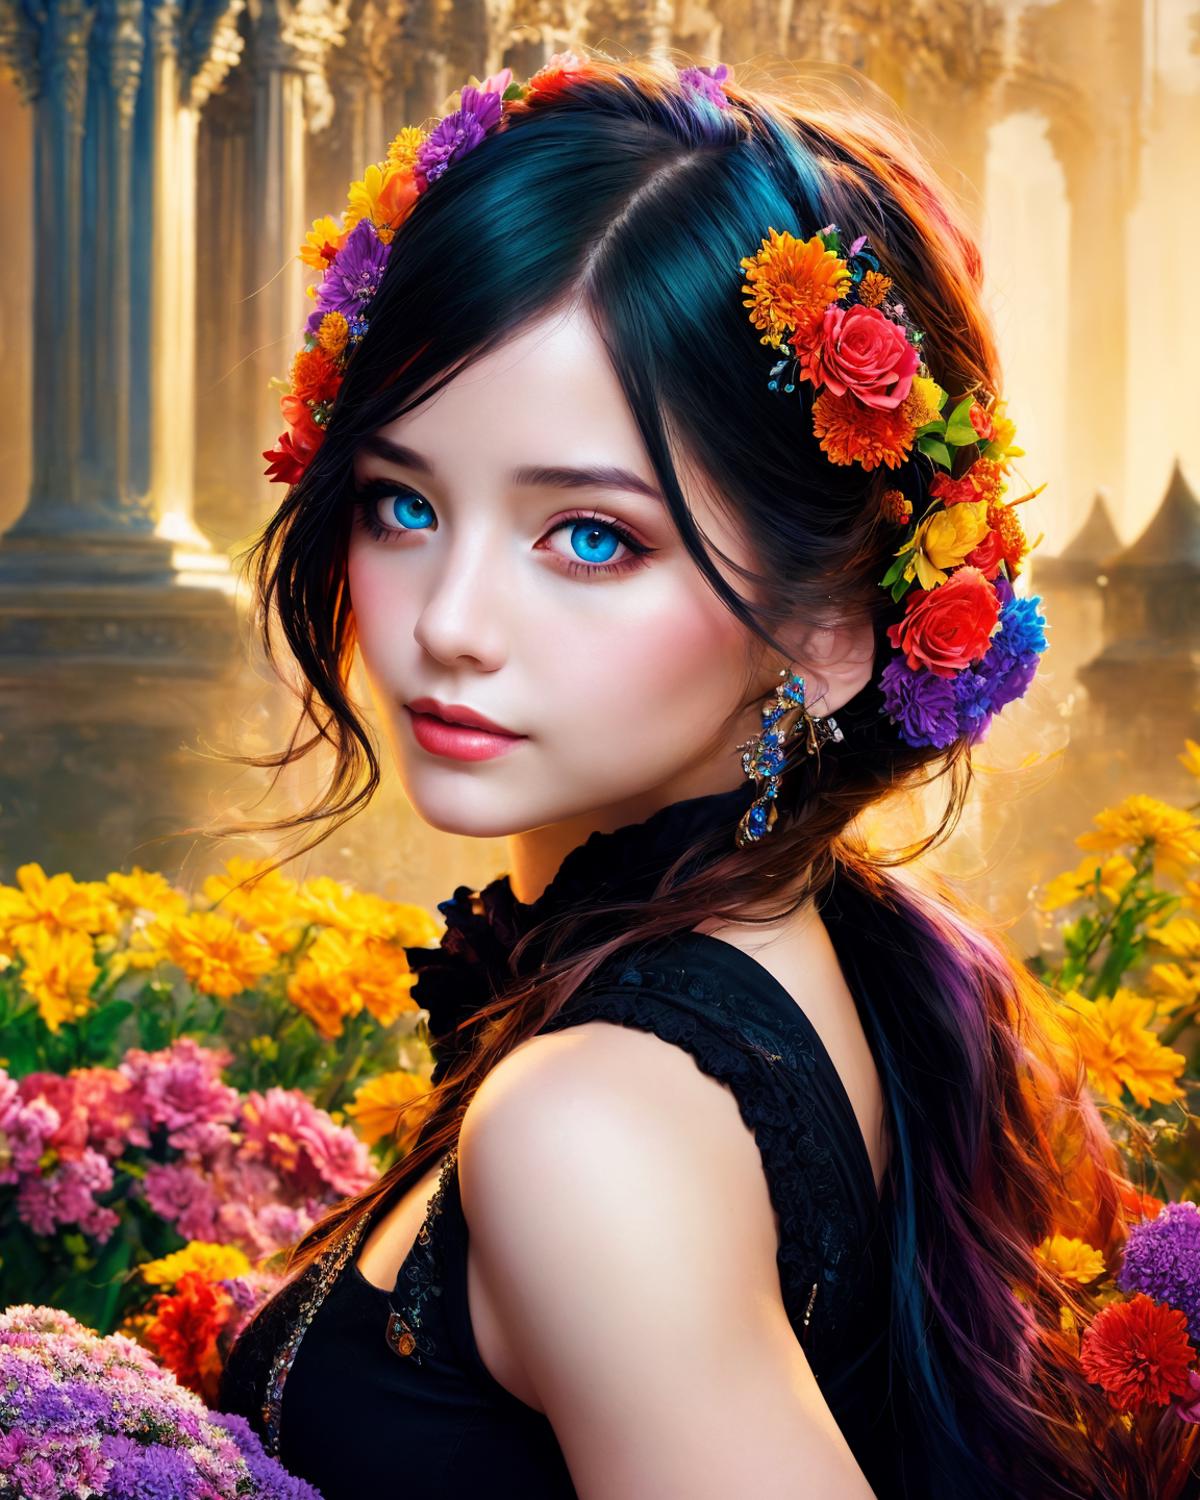 Stylizara / beautiful fantasy art portrait image by MrHong